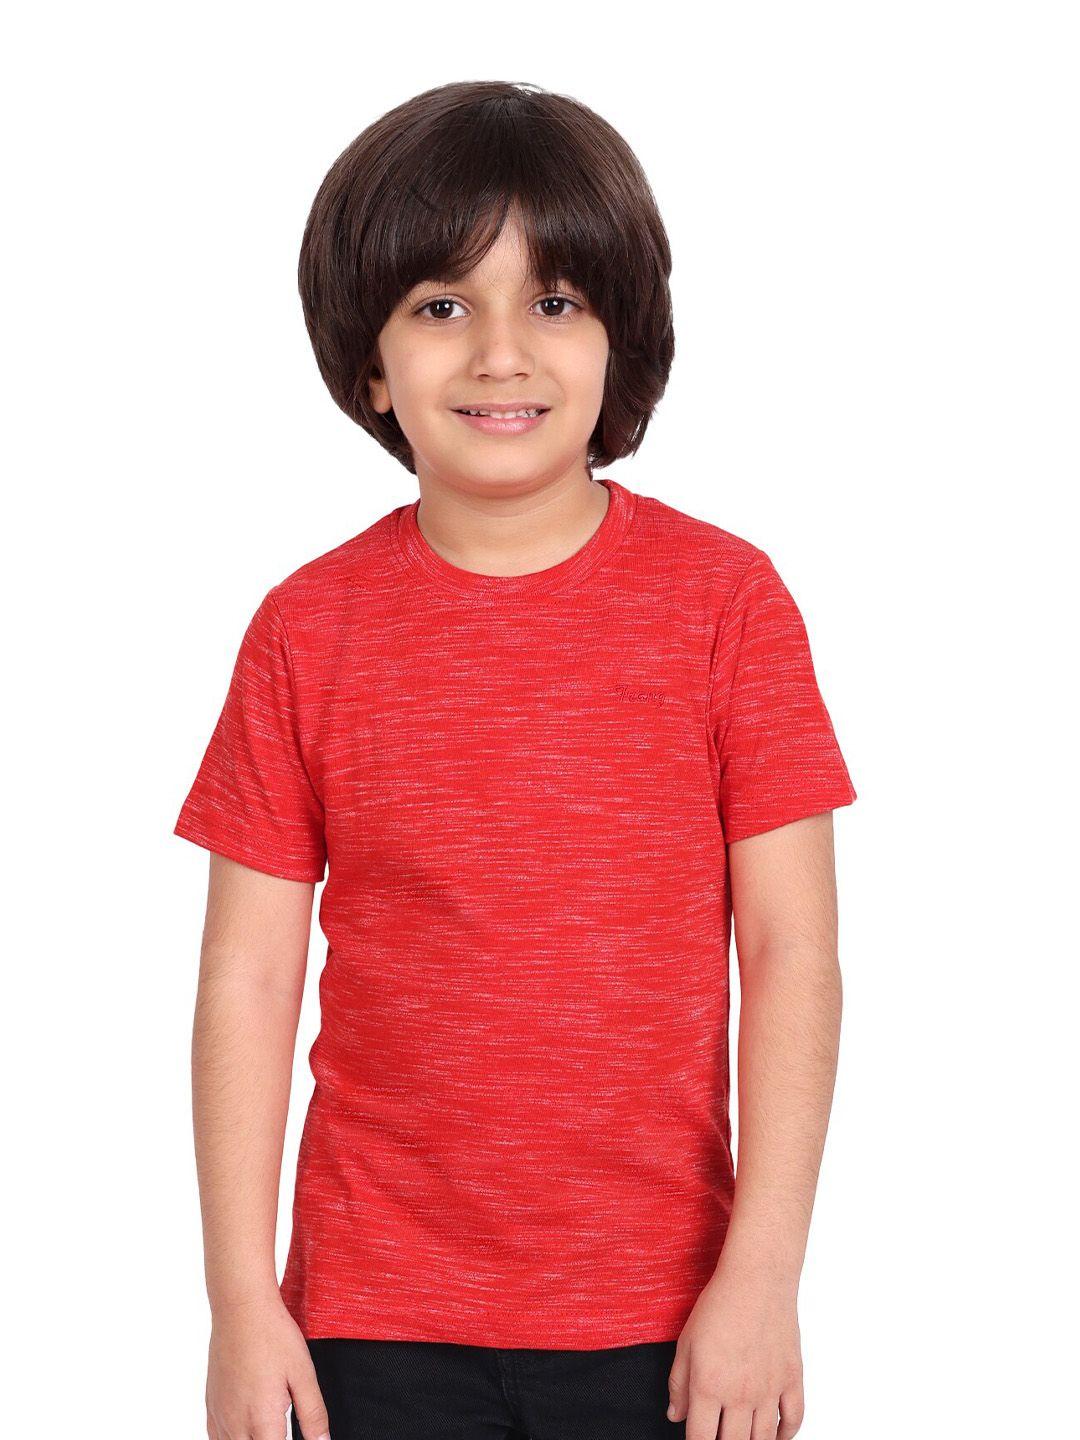 baesd-boys-red-t-shirt